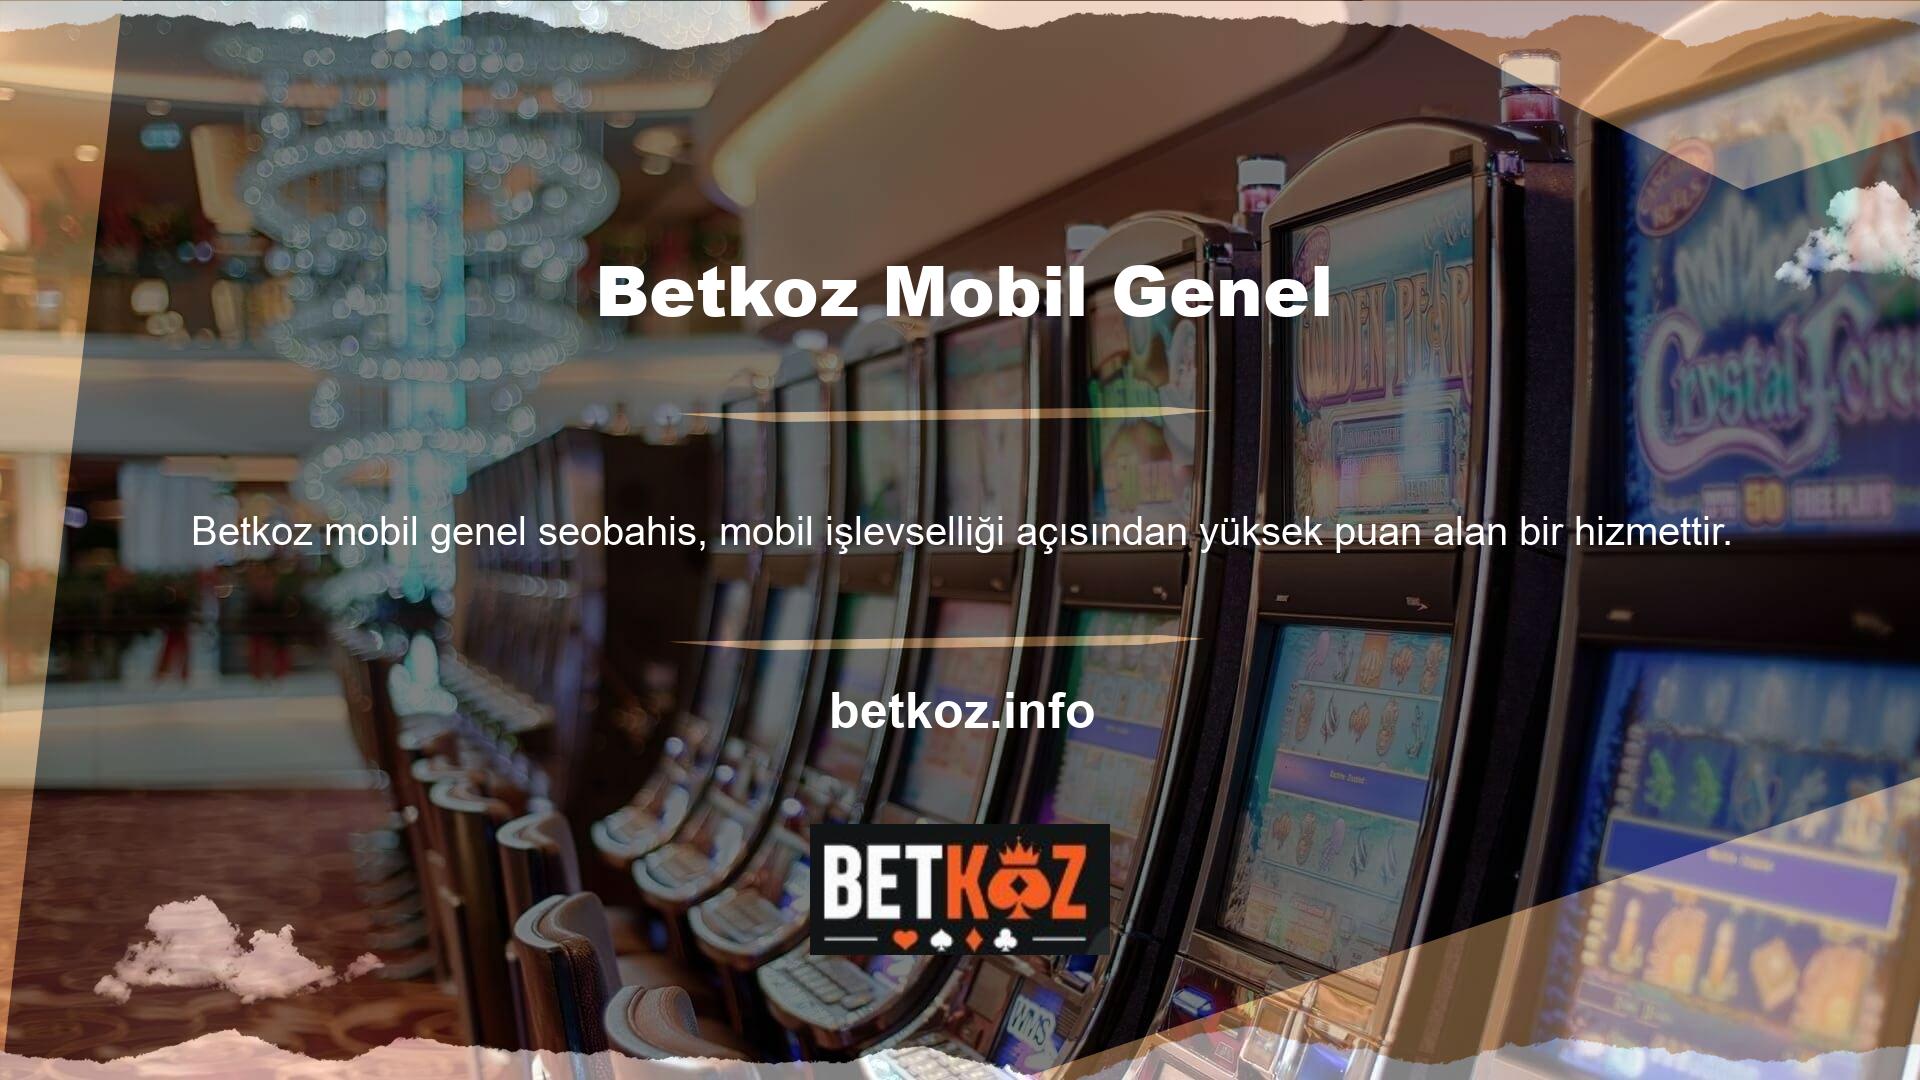 Betkoz sitesi casino tutkunlarının en büyük taleplerinden biri olan mobil programlar için gerekli altyapıyı sağlamaktadır